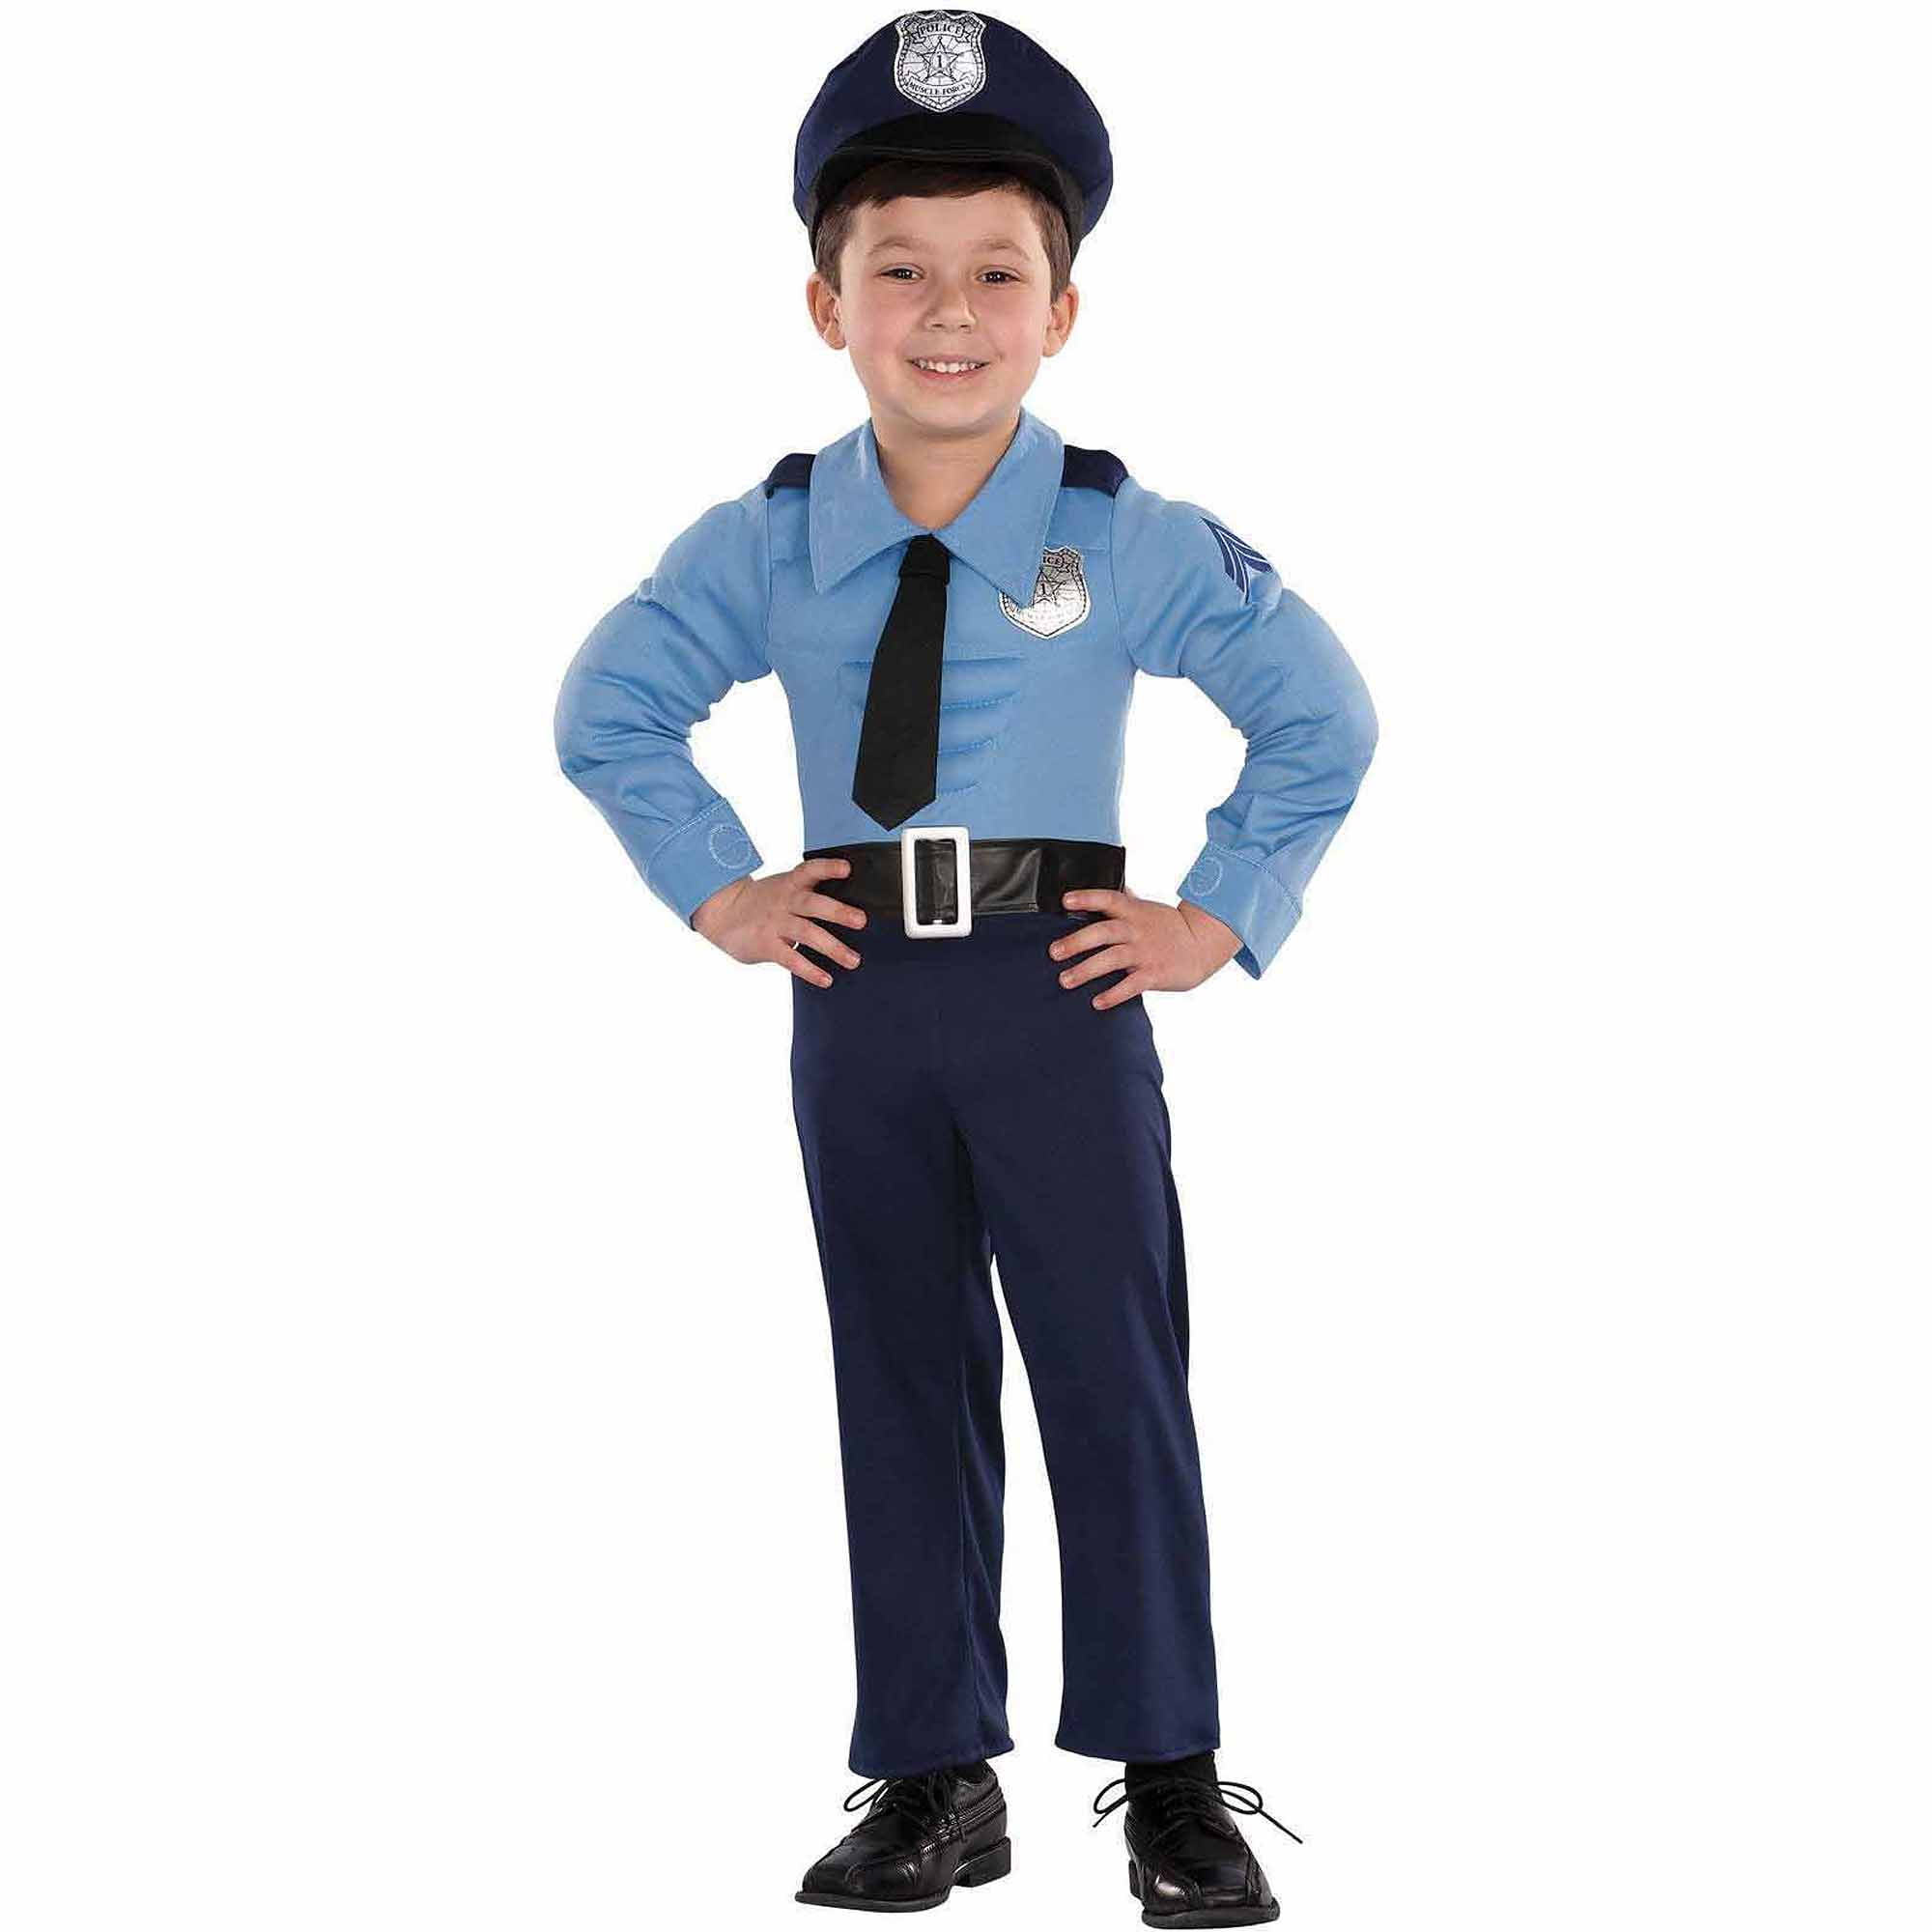 Мальчик милиционер. Детский костюм милиционера. Костюм полицейский мальчик. Мальчик в полицейской форме. Костюм полиции для мальчика.